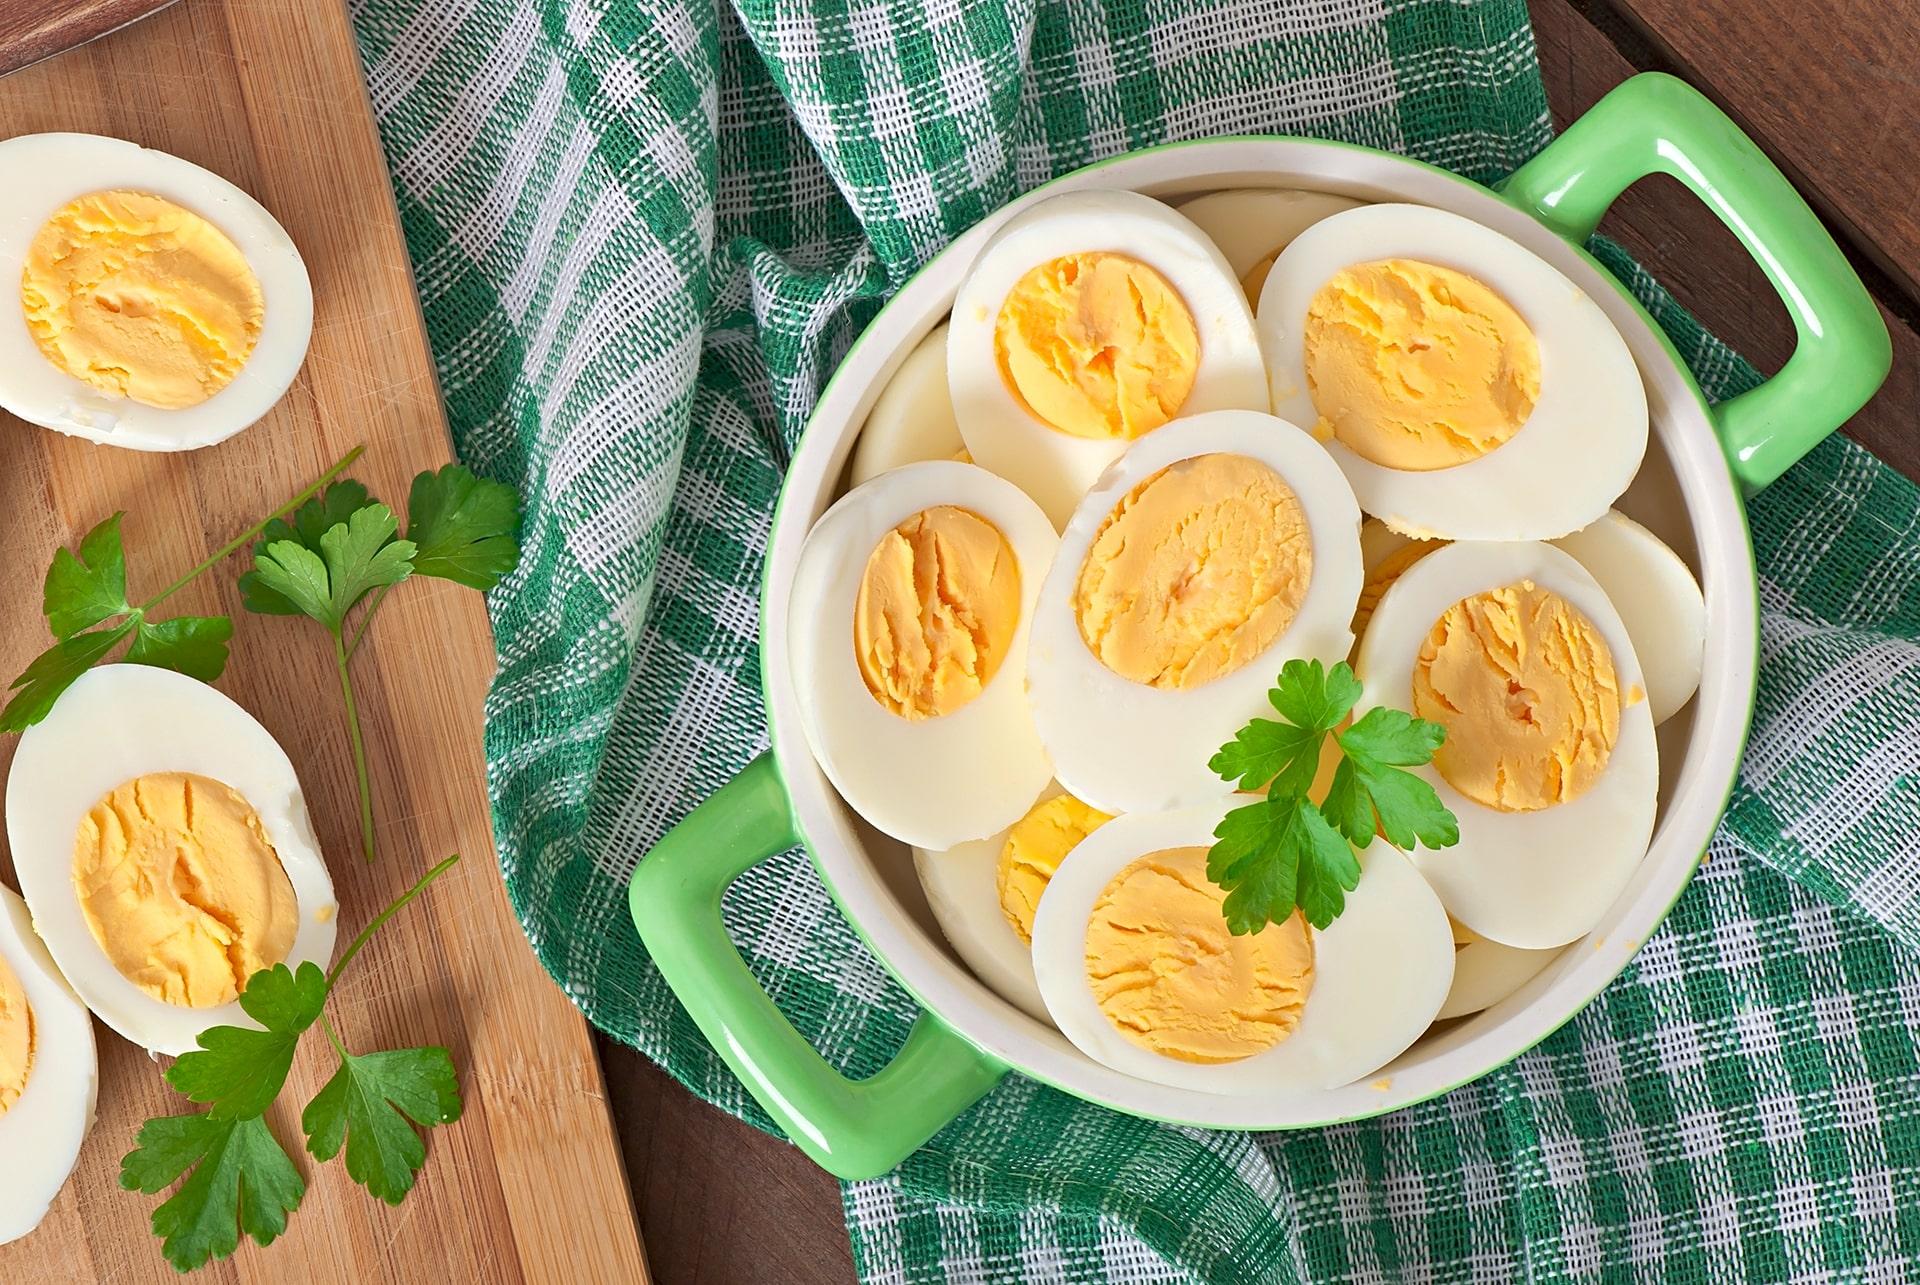 अपने आहार को 'अंडे से भरपूर' बनाएं: ध्यान रखने योग्य अंडे के महत्वपूर्ण पोषण संबंधी तथ्य!